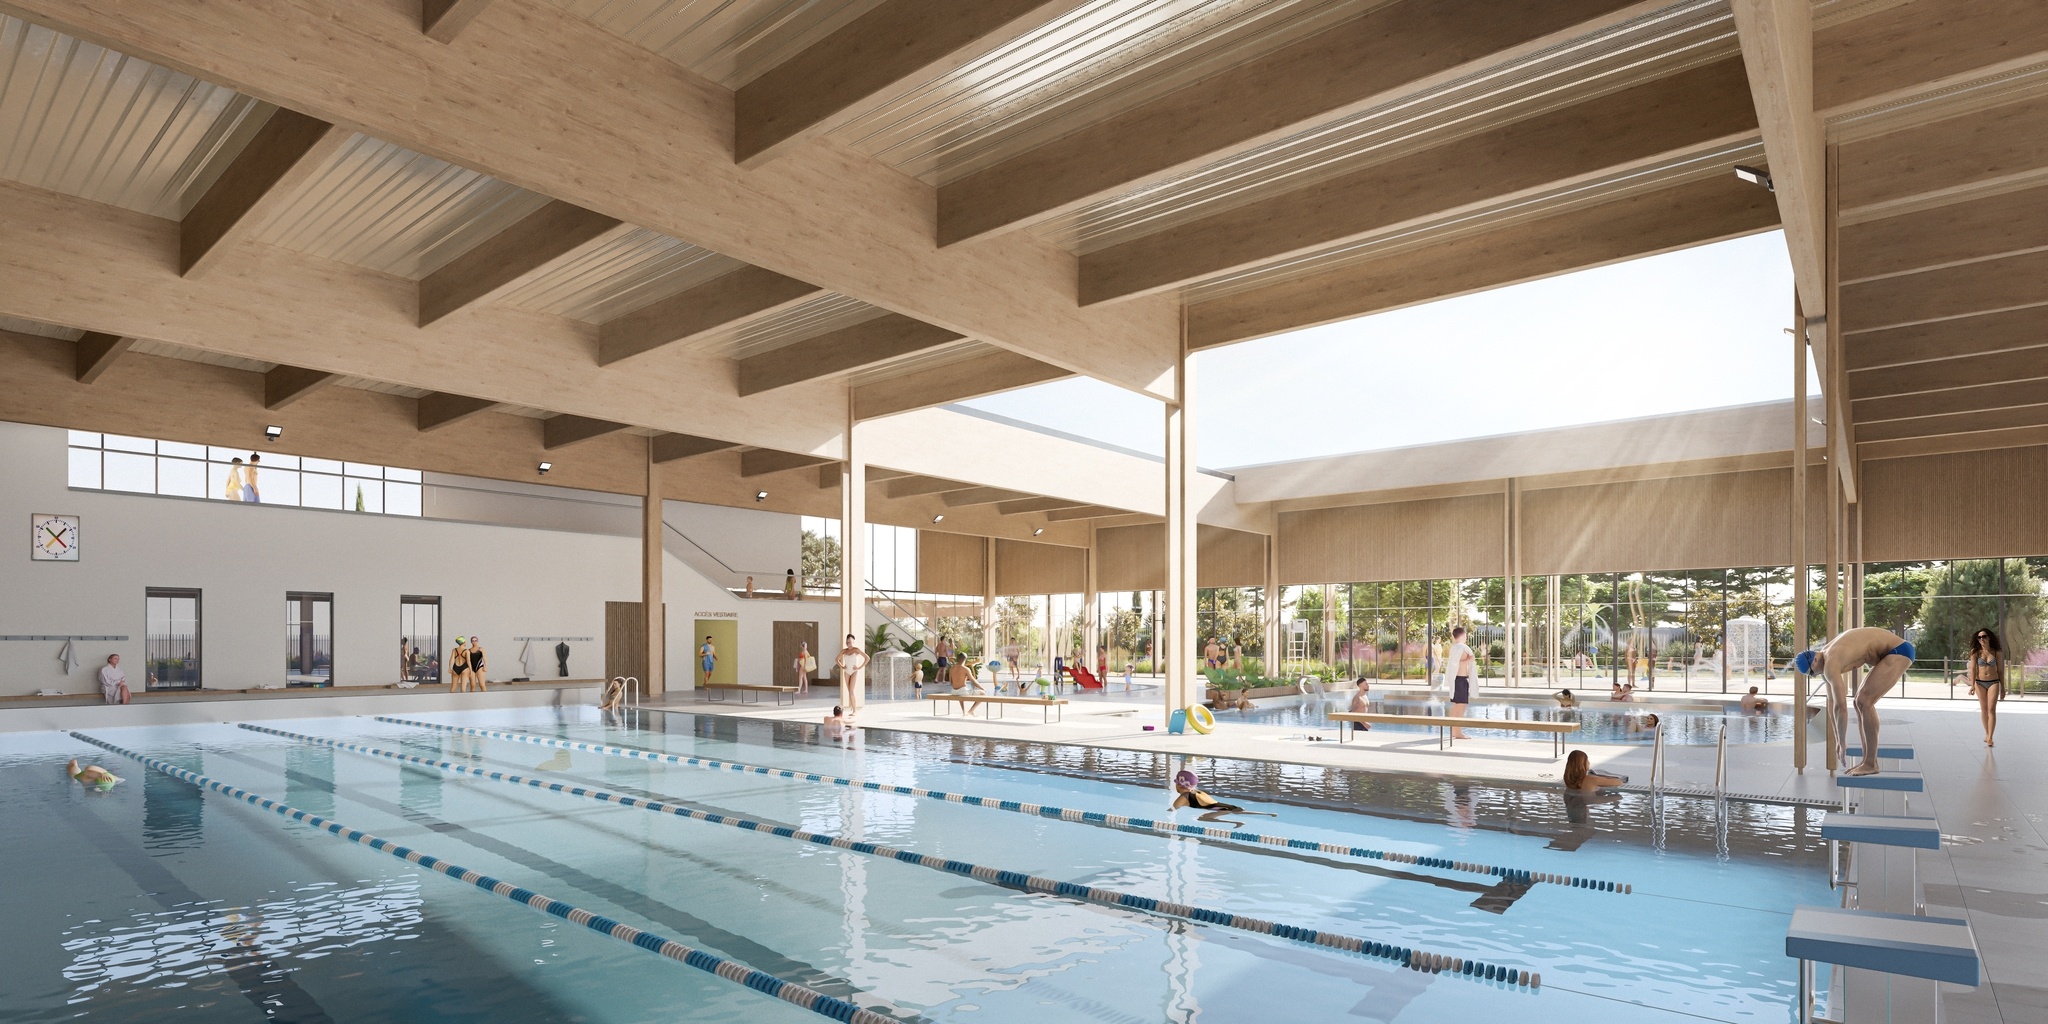 Perspective séduction vue intérieur de la piscine pour le projet de Piscine de Chateaurenard